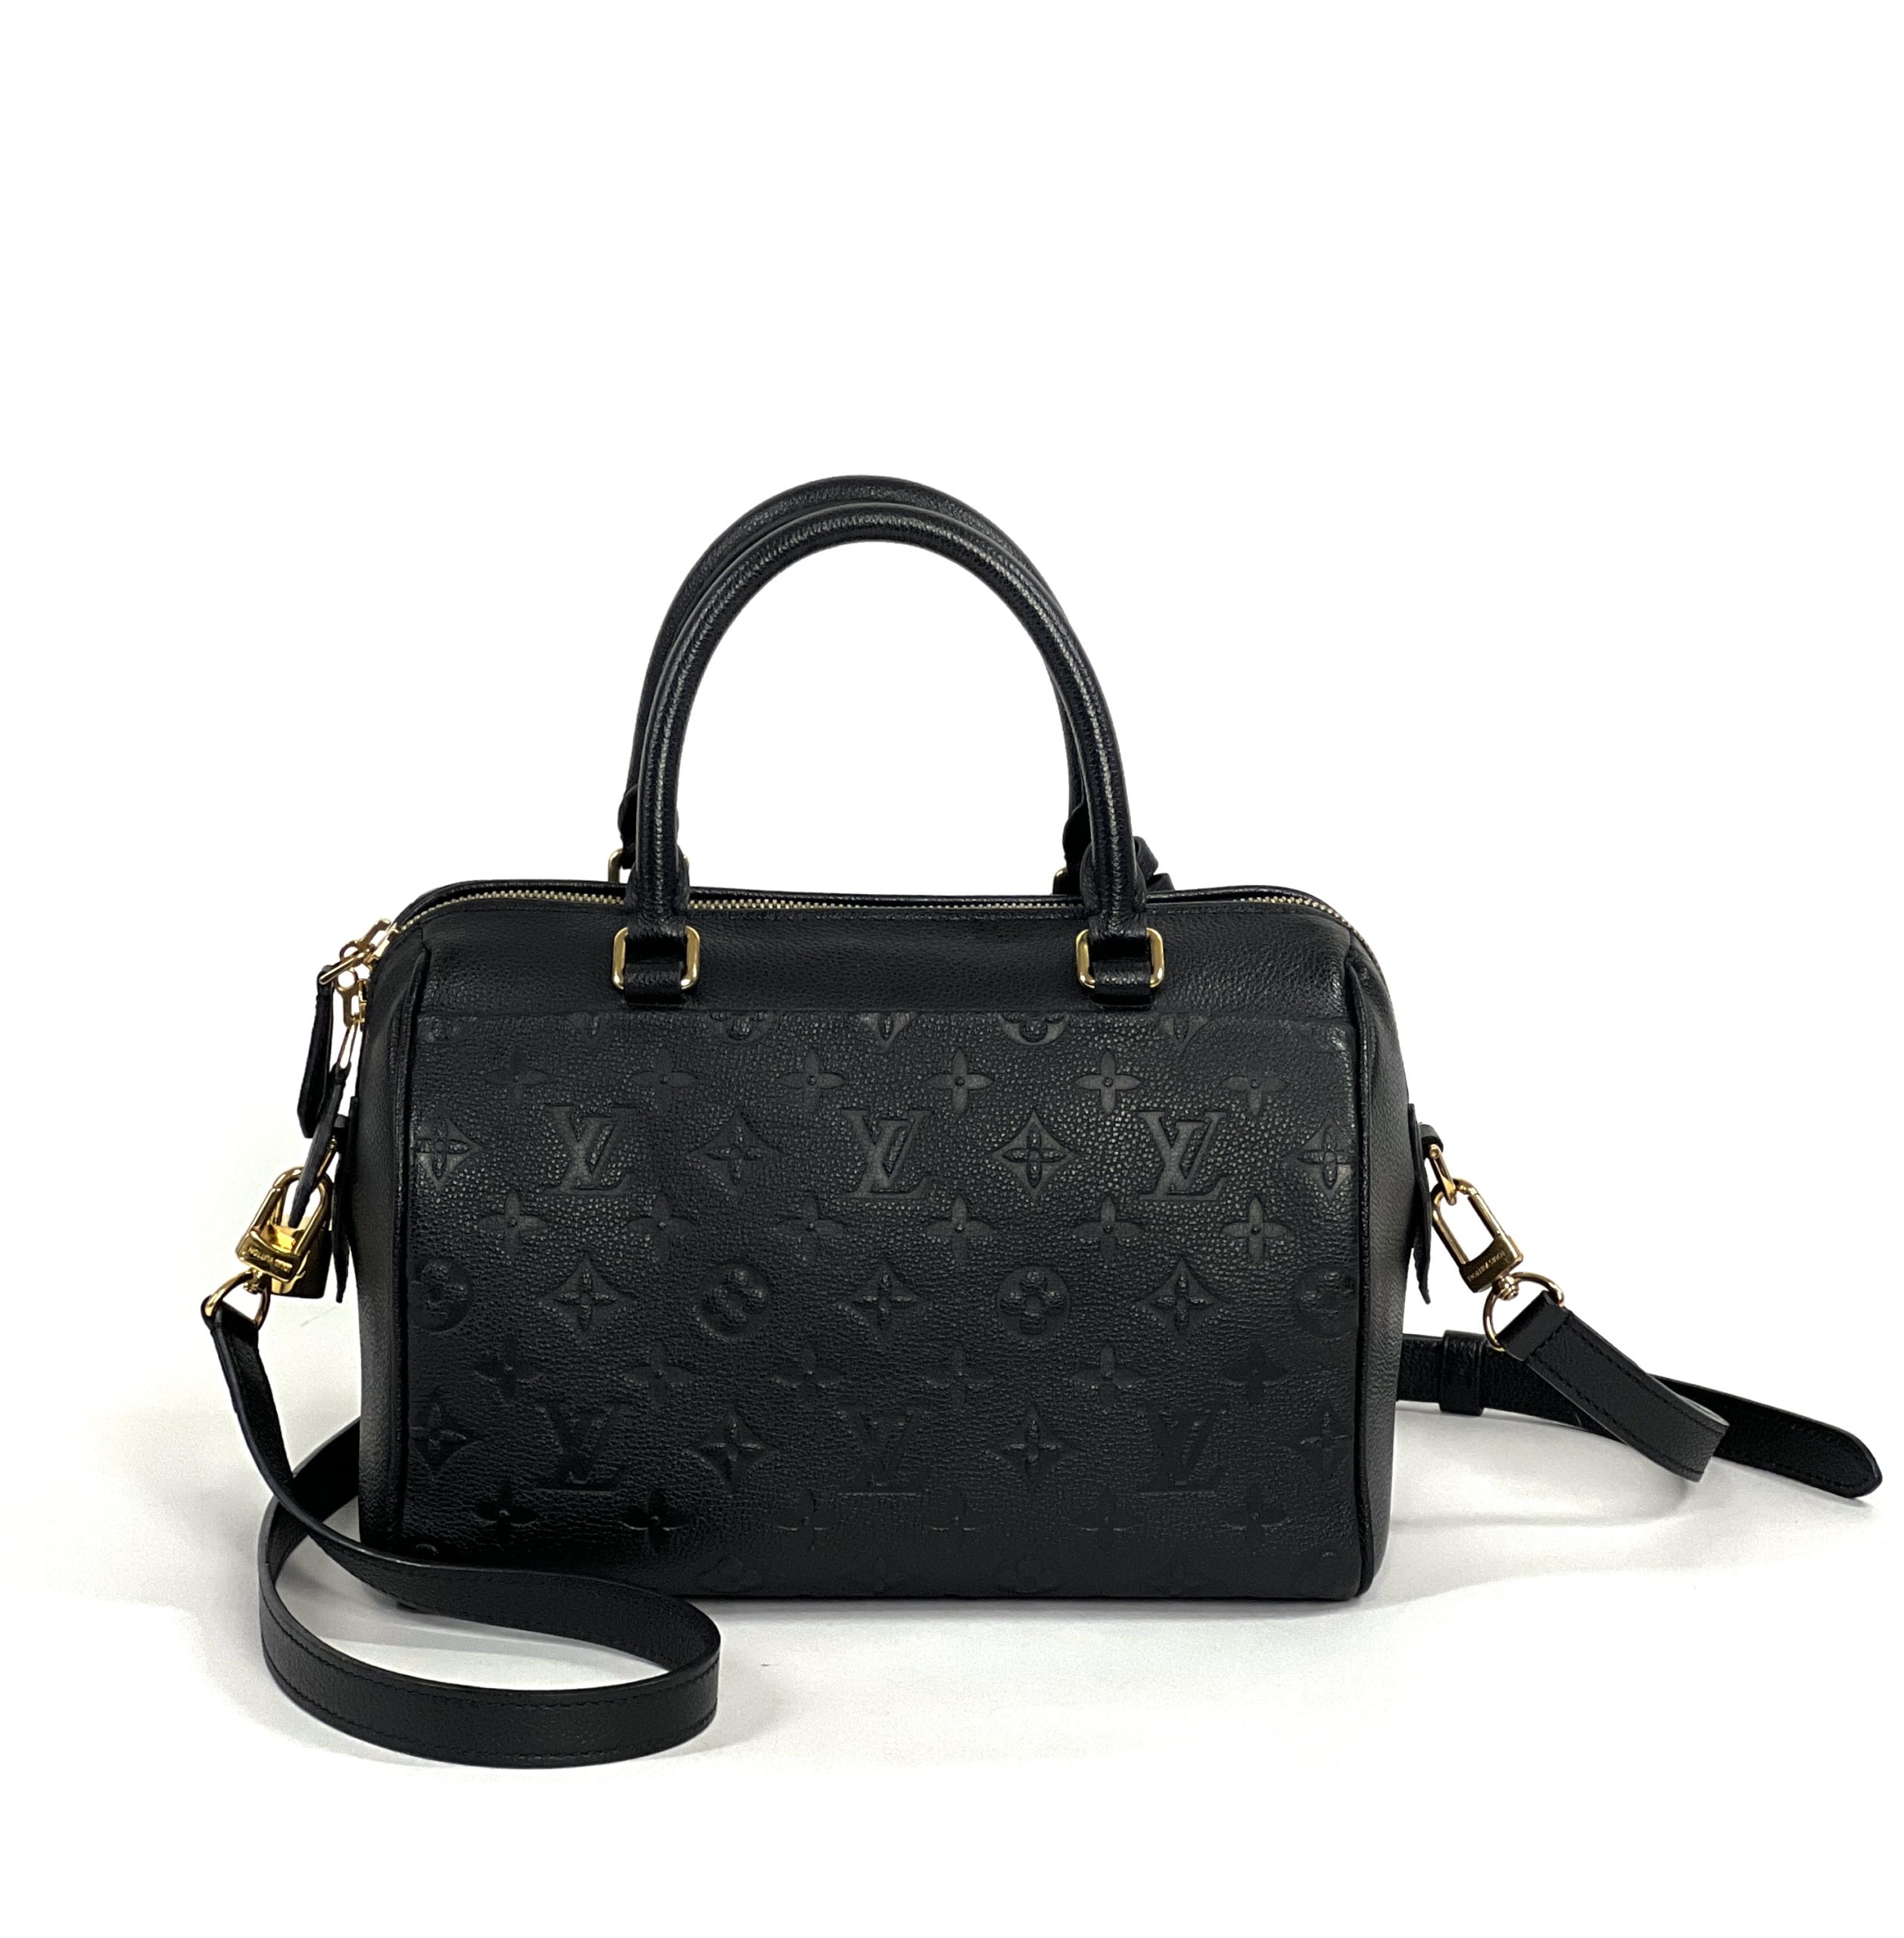 Louis Vuitton 2016 Speedy  PM Shoulder Bag - Black